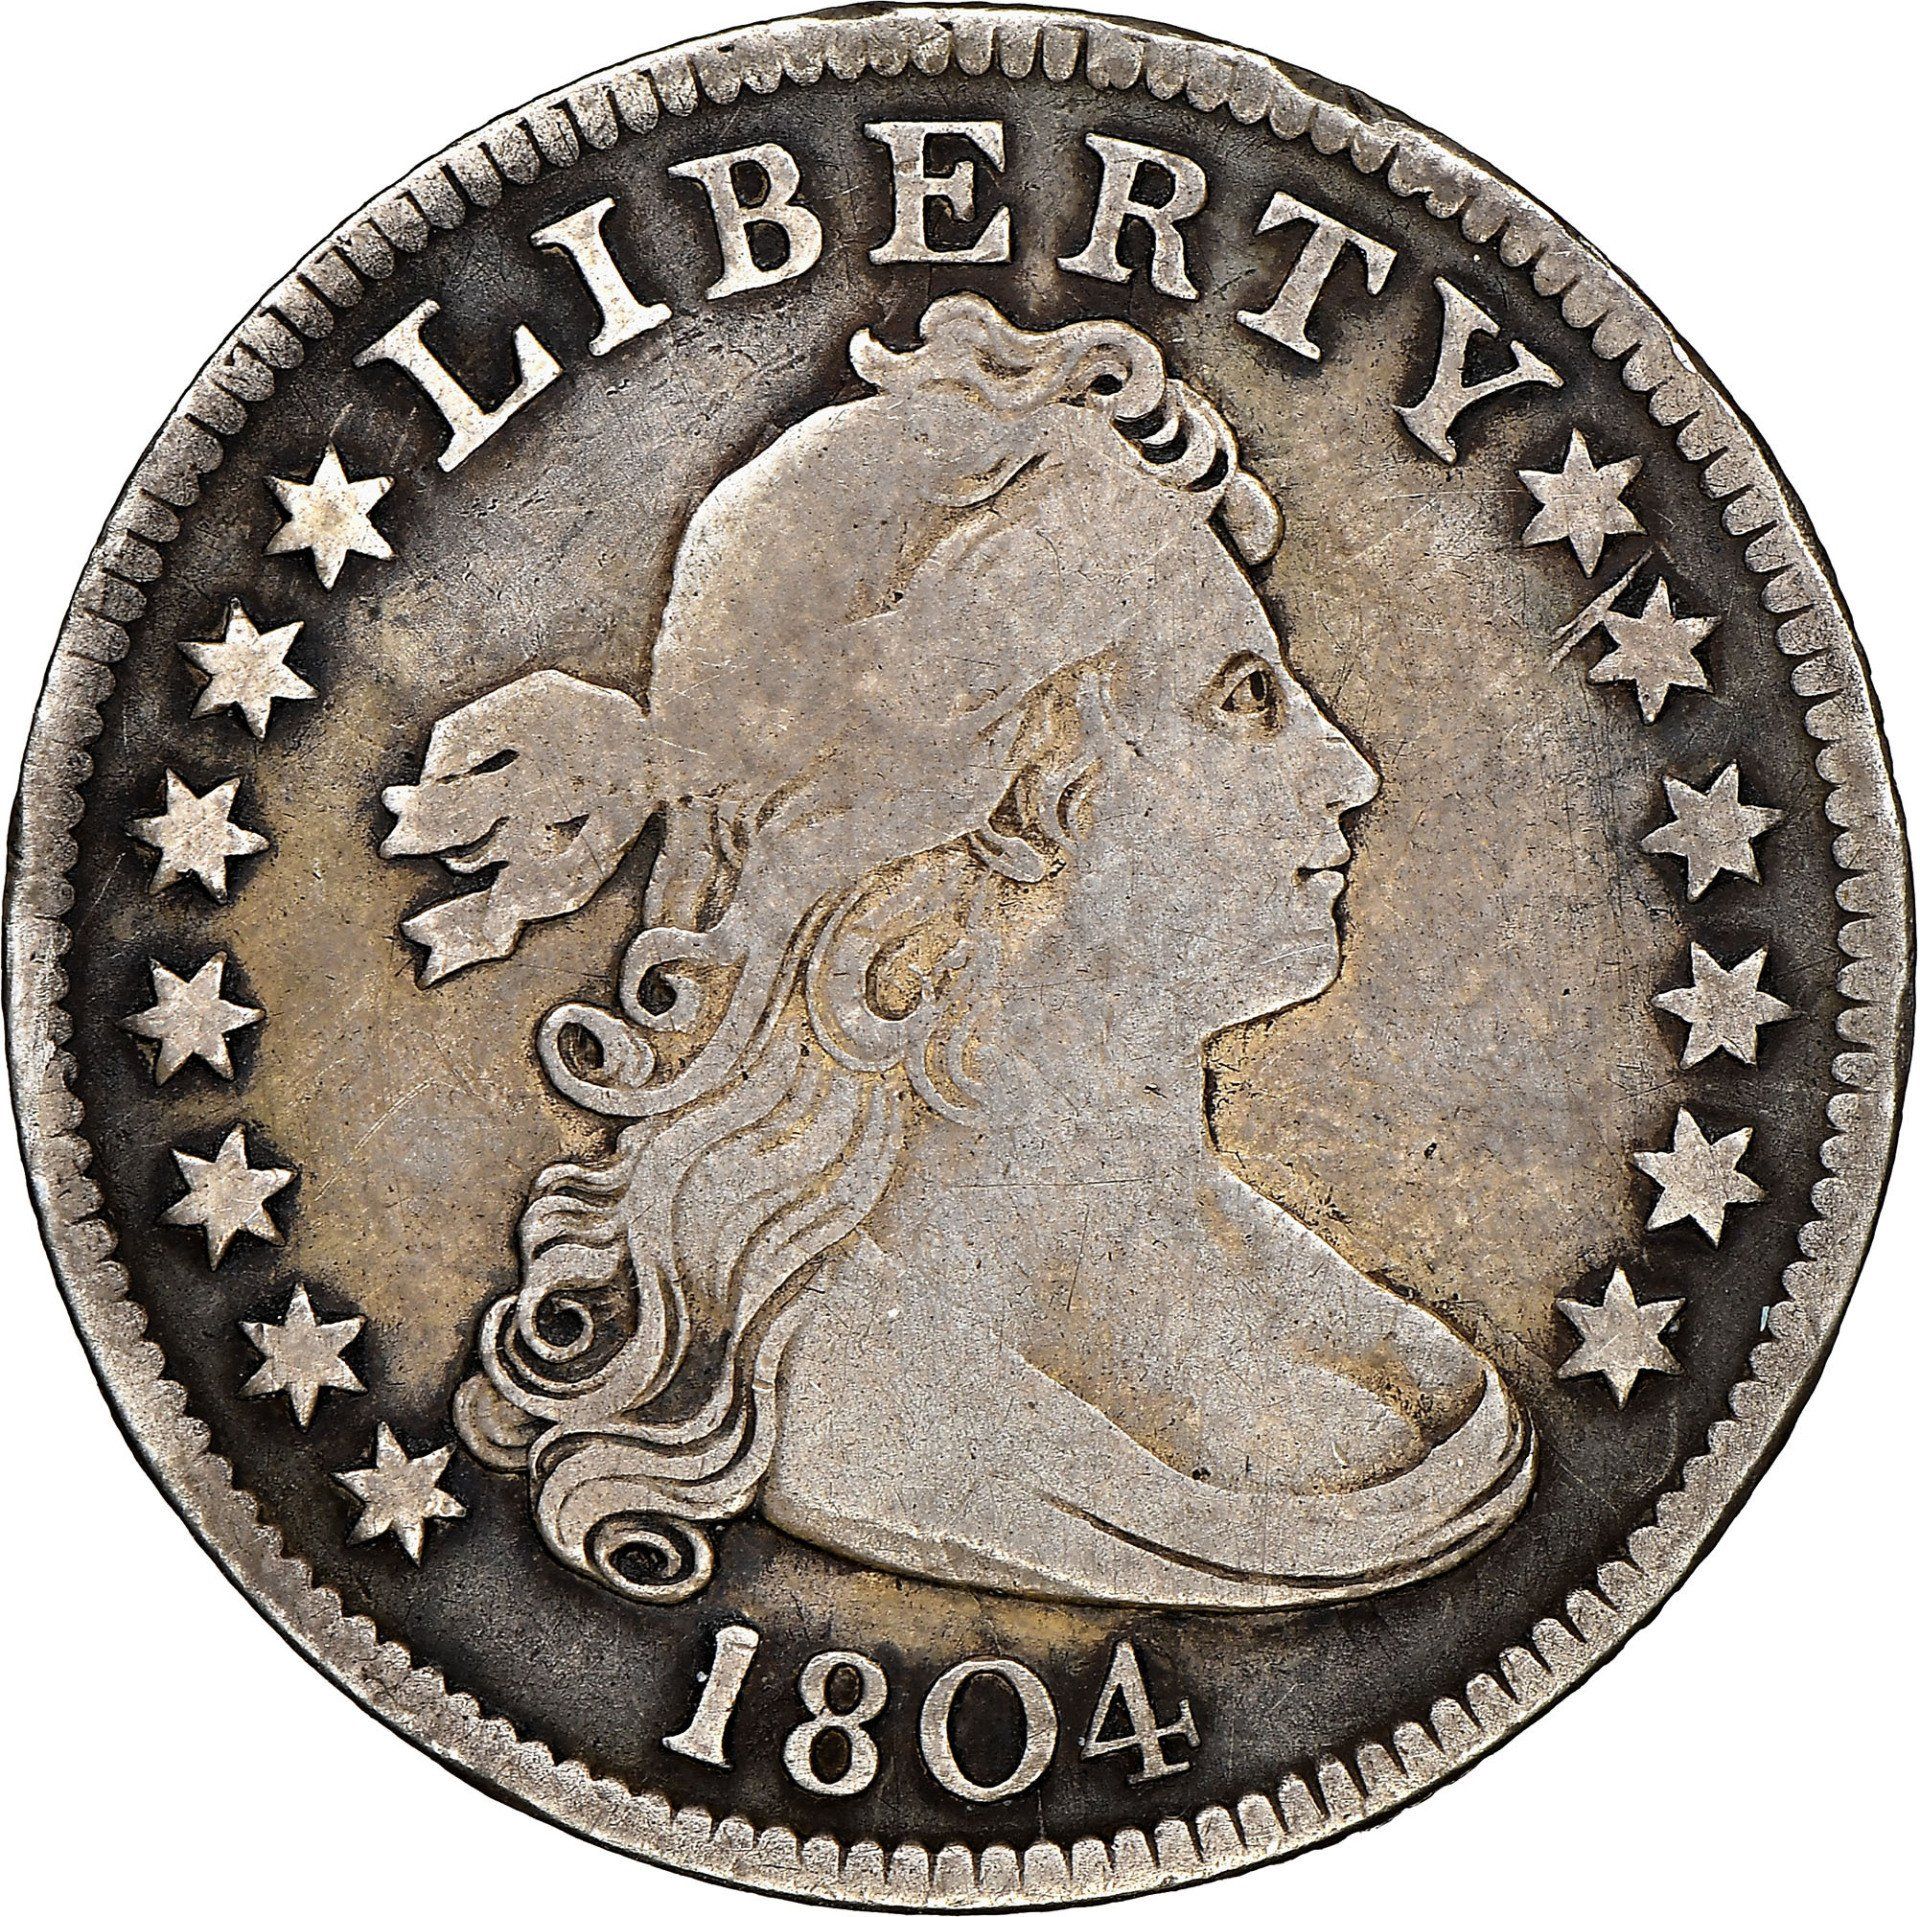 1804 Draped Bust Quarter Image courtesy of NGC